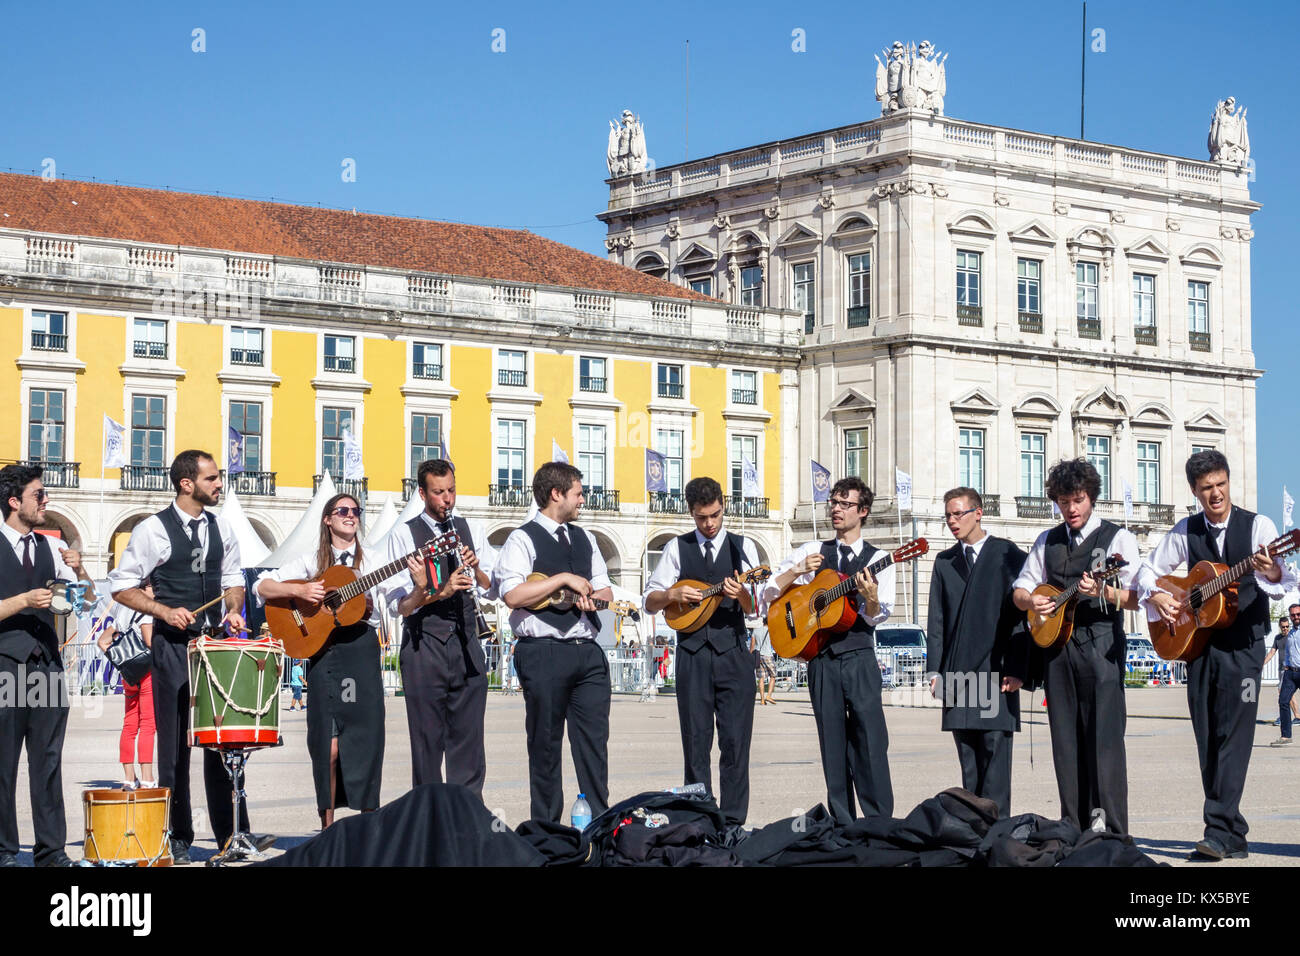 Lisbonne Portugal,Baixa,Chiado,centre historique,Terreiro do Paco,Praca do Comercio,place du Commerce,place publique,Tpas,groupe de musique traditionnelle,Stud étudiant Banque D'Images